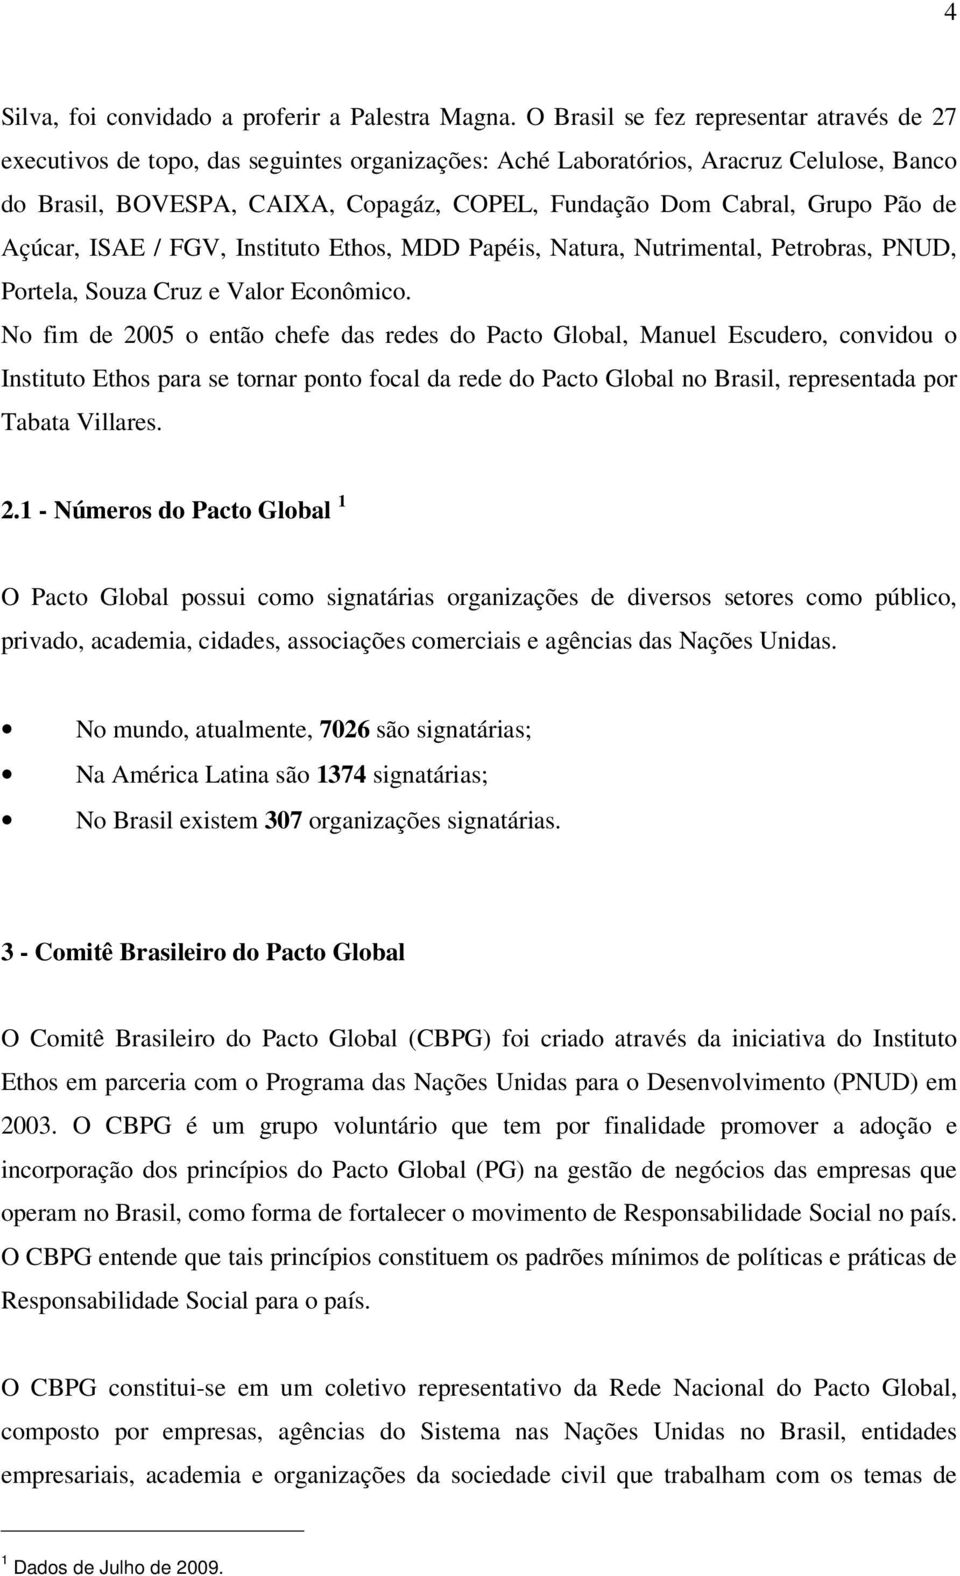 Grupo Pão de Açúcar, ISAE / FGV, Instituto Ethos, MDD Papéis, Natura, Nutrimental, Petrobras, PNUD, Portela, Souza Cruz e Valor Econômico.